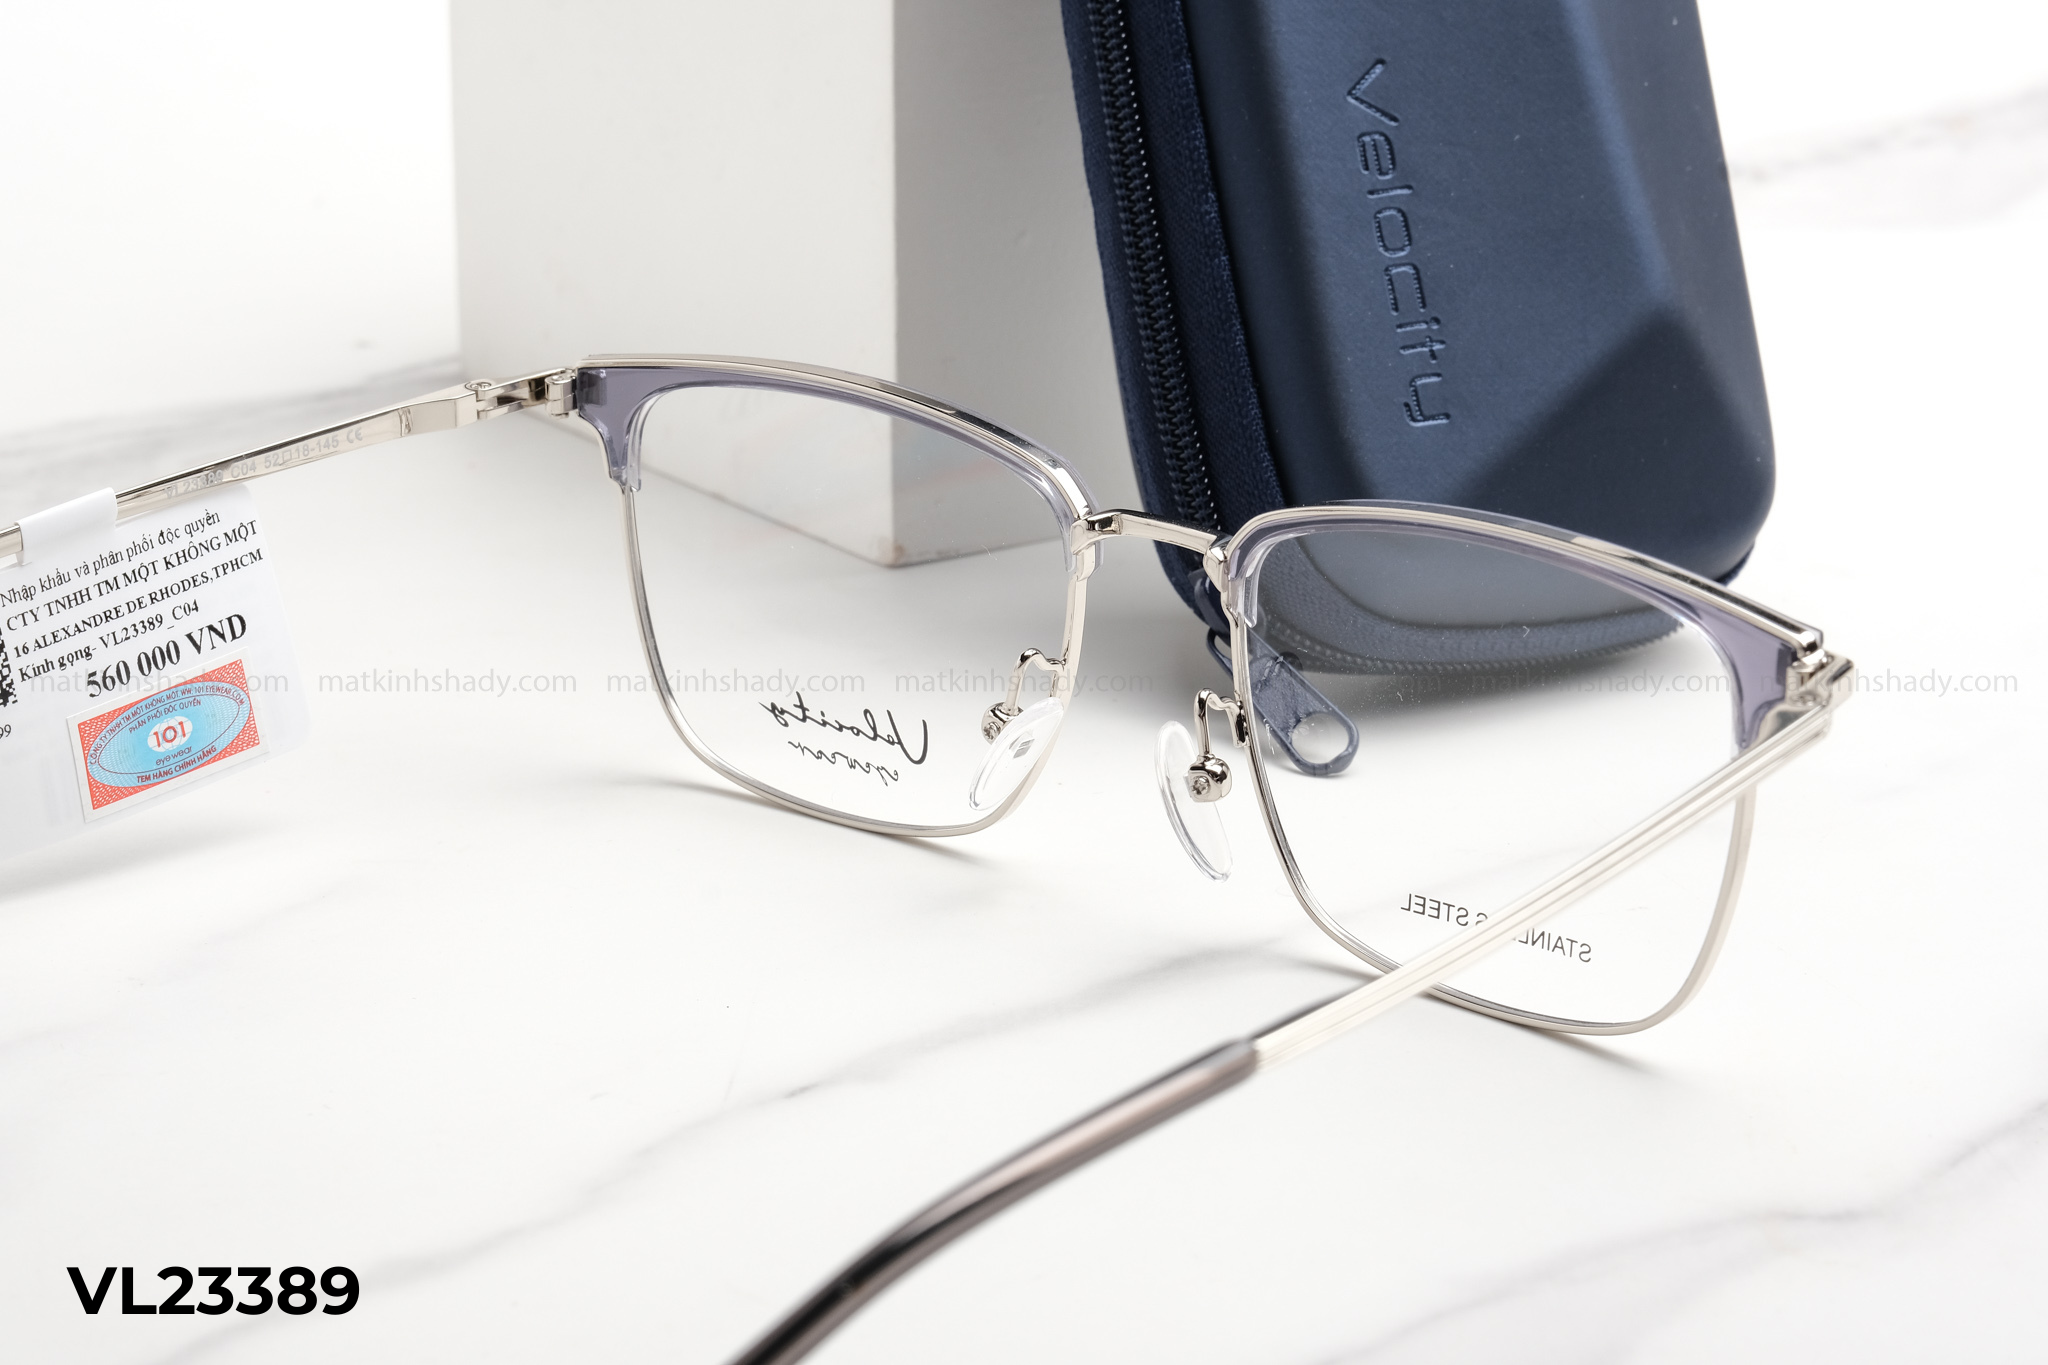  Velocity Eyewear - Glasses - VL23389 